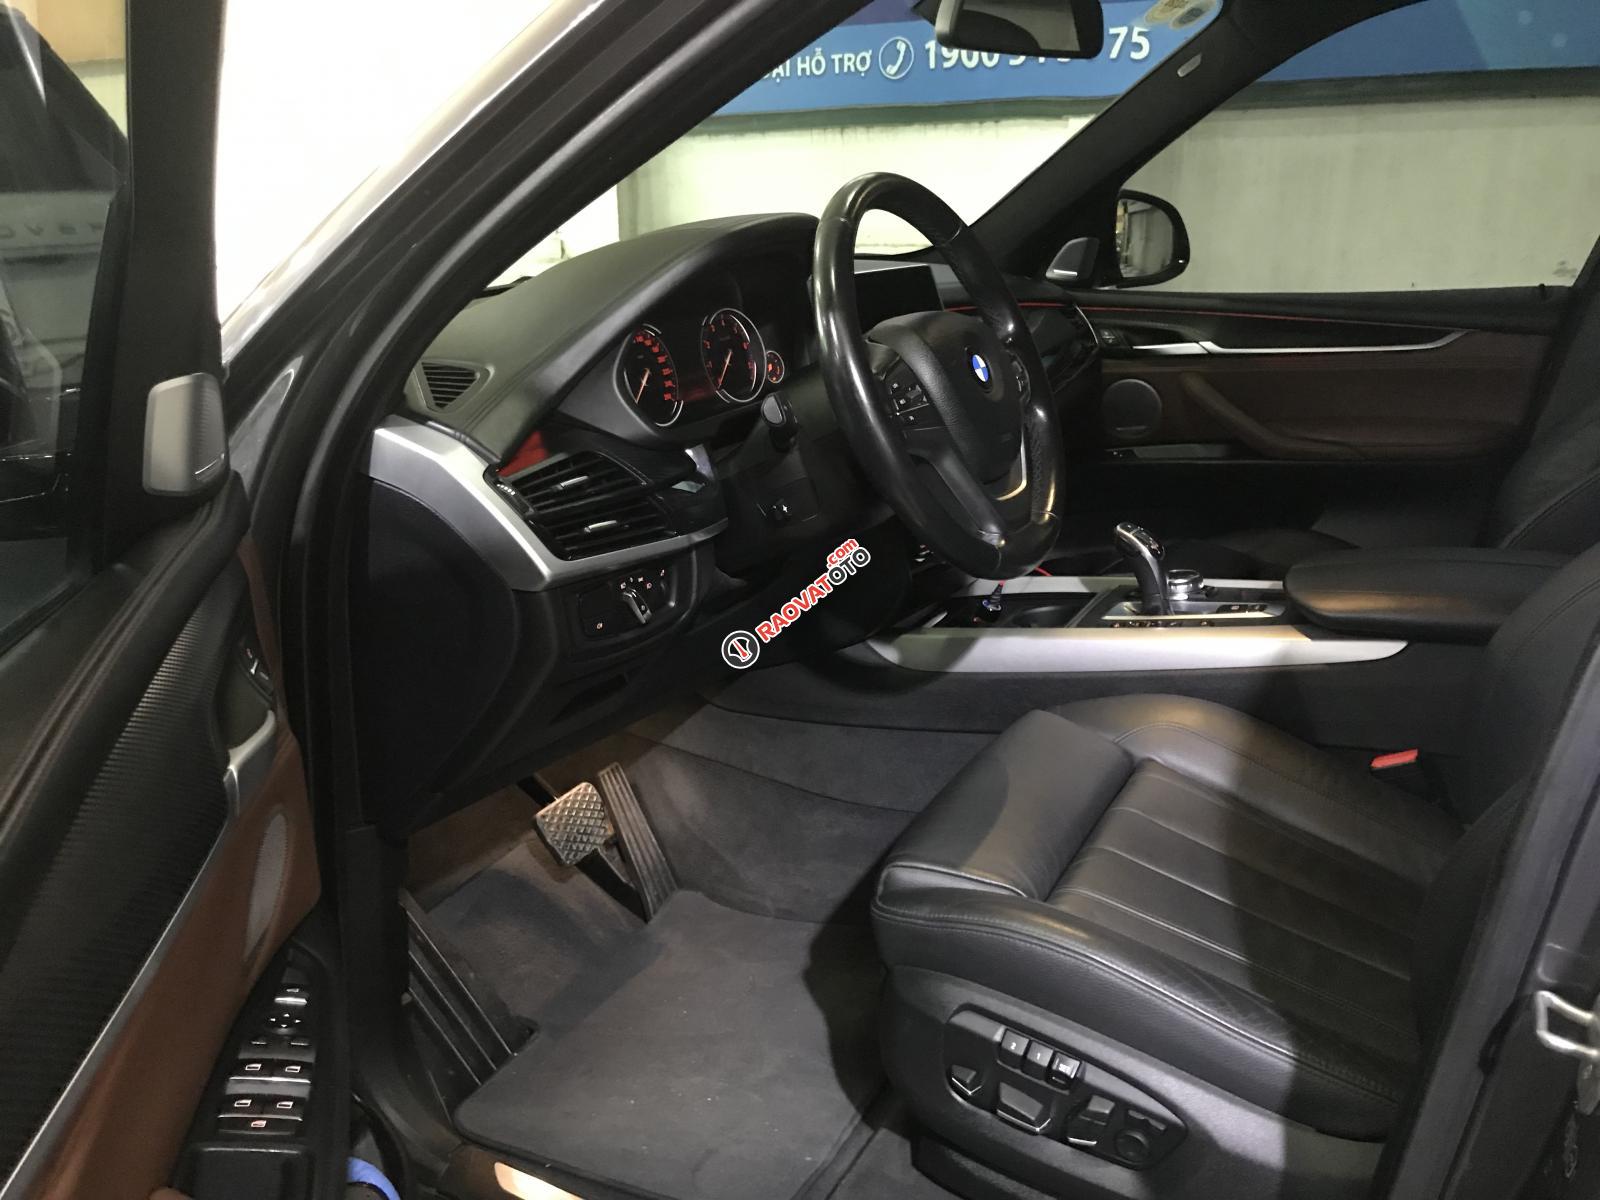 Cần bán xe BMW X5 3.0 sản xuất năm 2014, màu xám (ghi), nhập khẩu nguyên chiếc-4